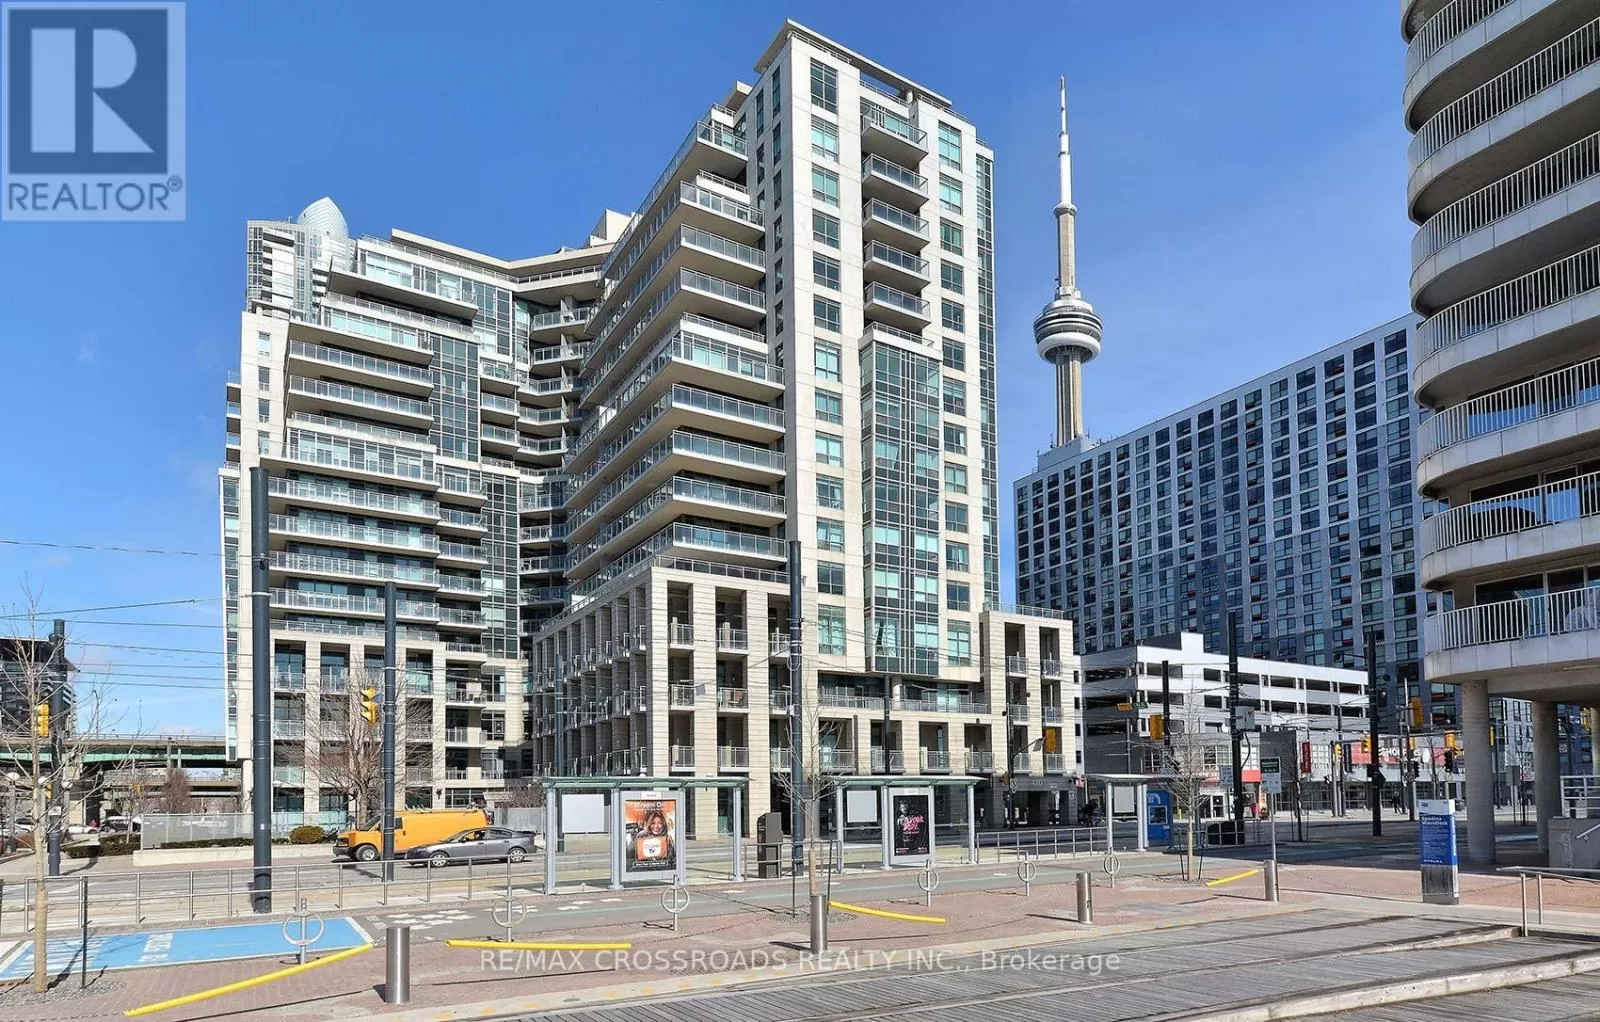 Apartment for rent: 208 - 410 Queens Quay W, Toronto, Ontario M5V 2Z3